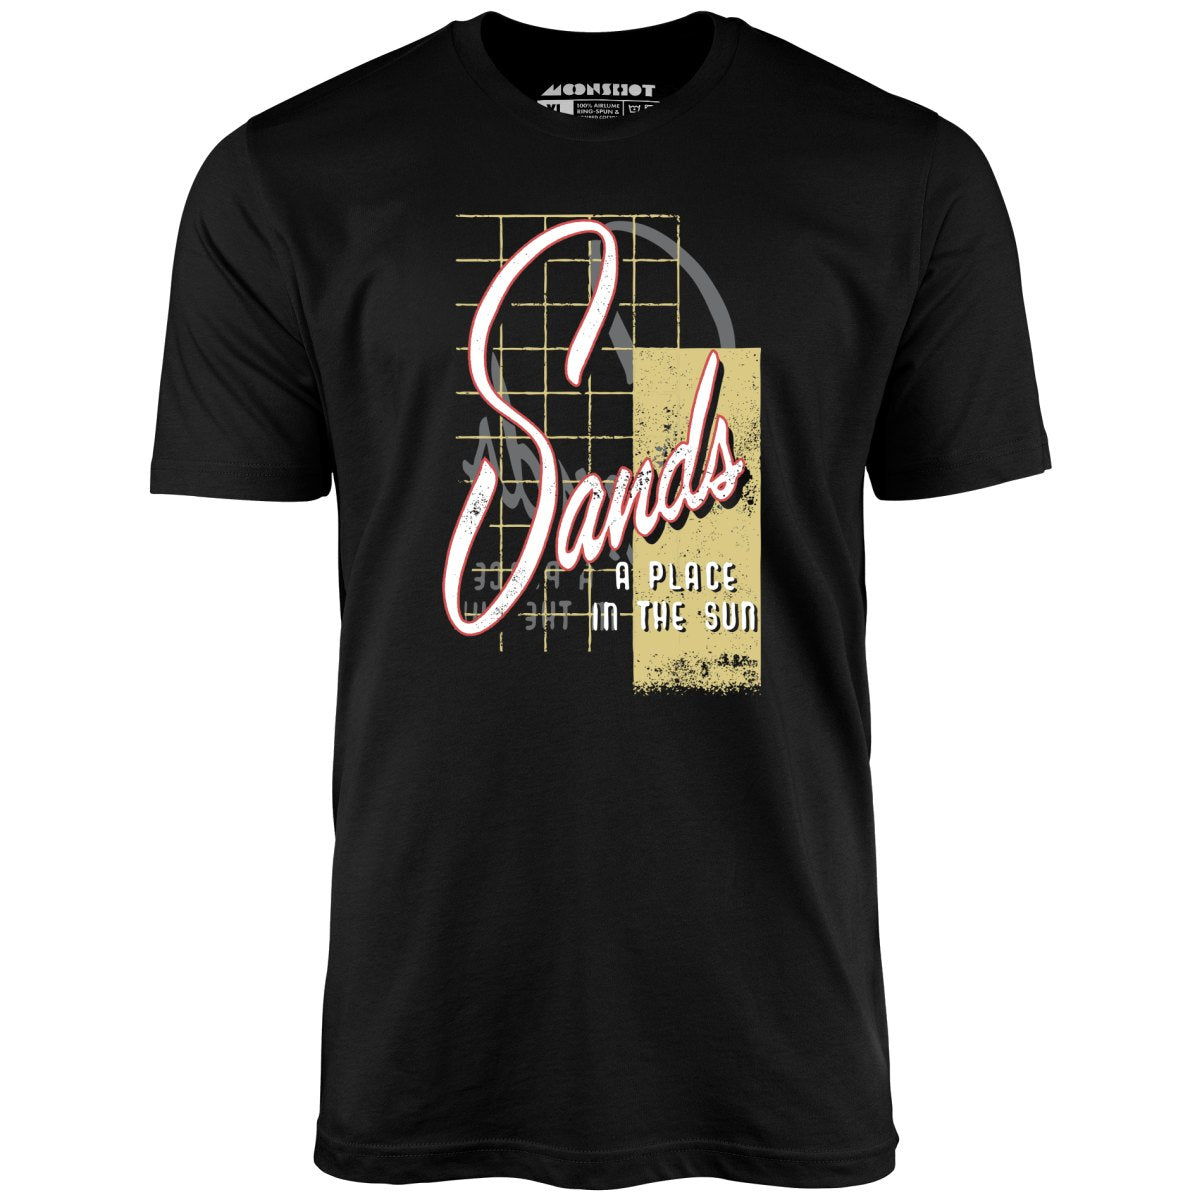 Sands Hotel & Casino - Vintage Las Vegas - Unisex T-Shirt